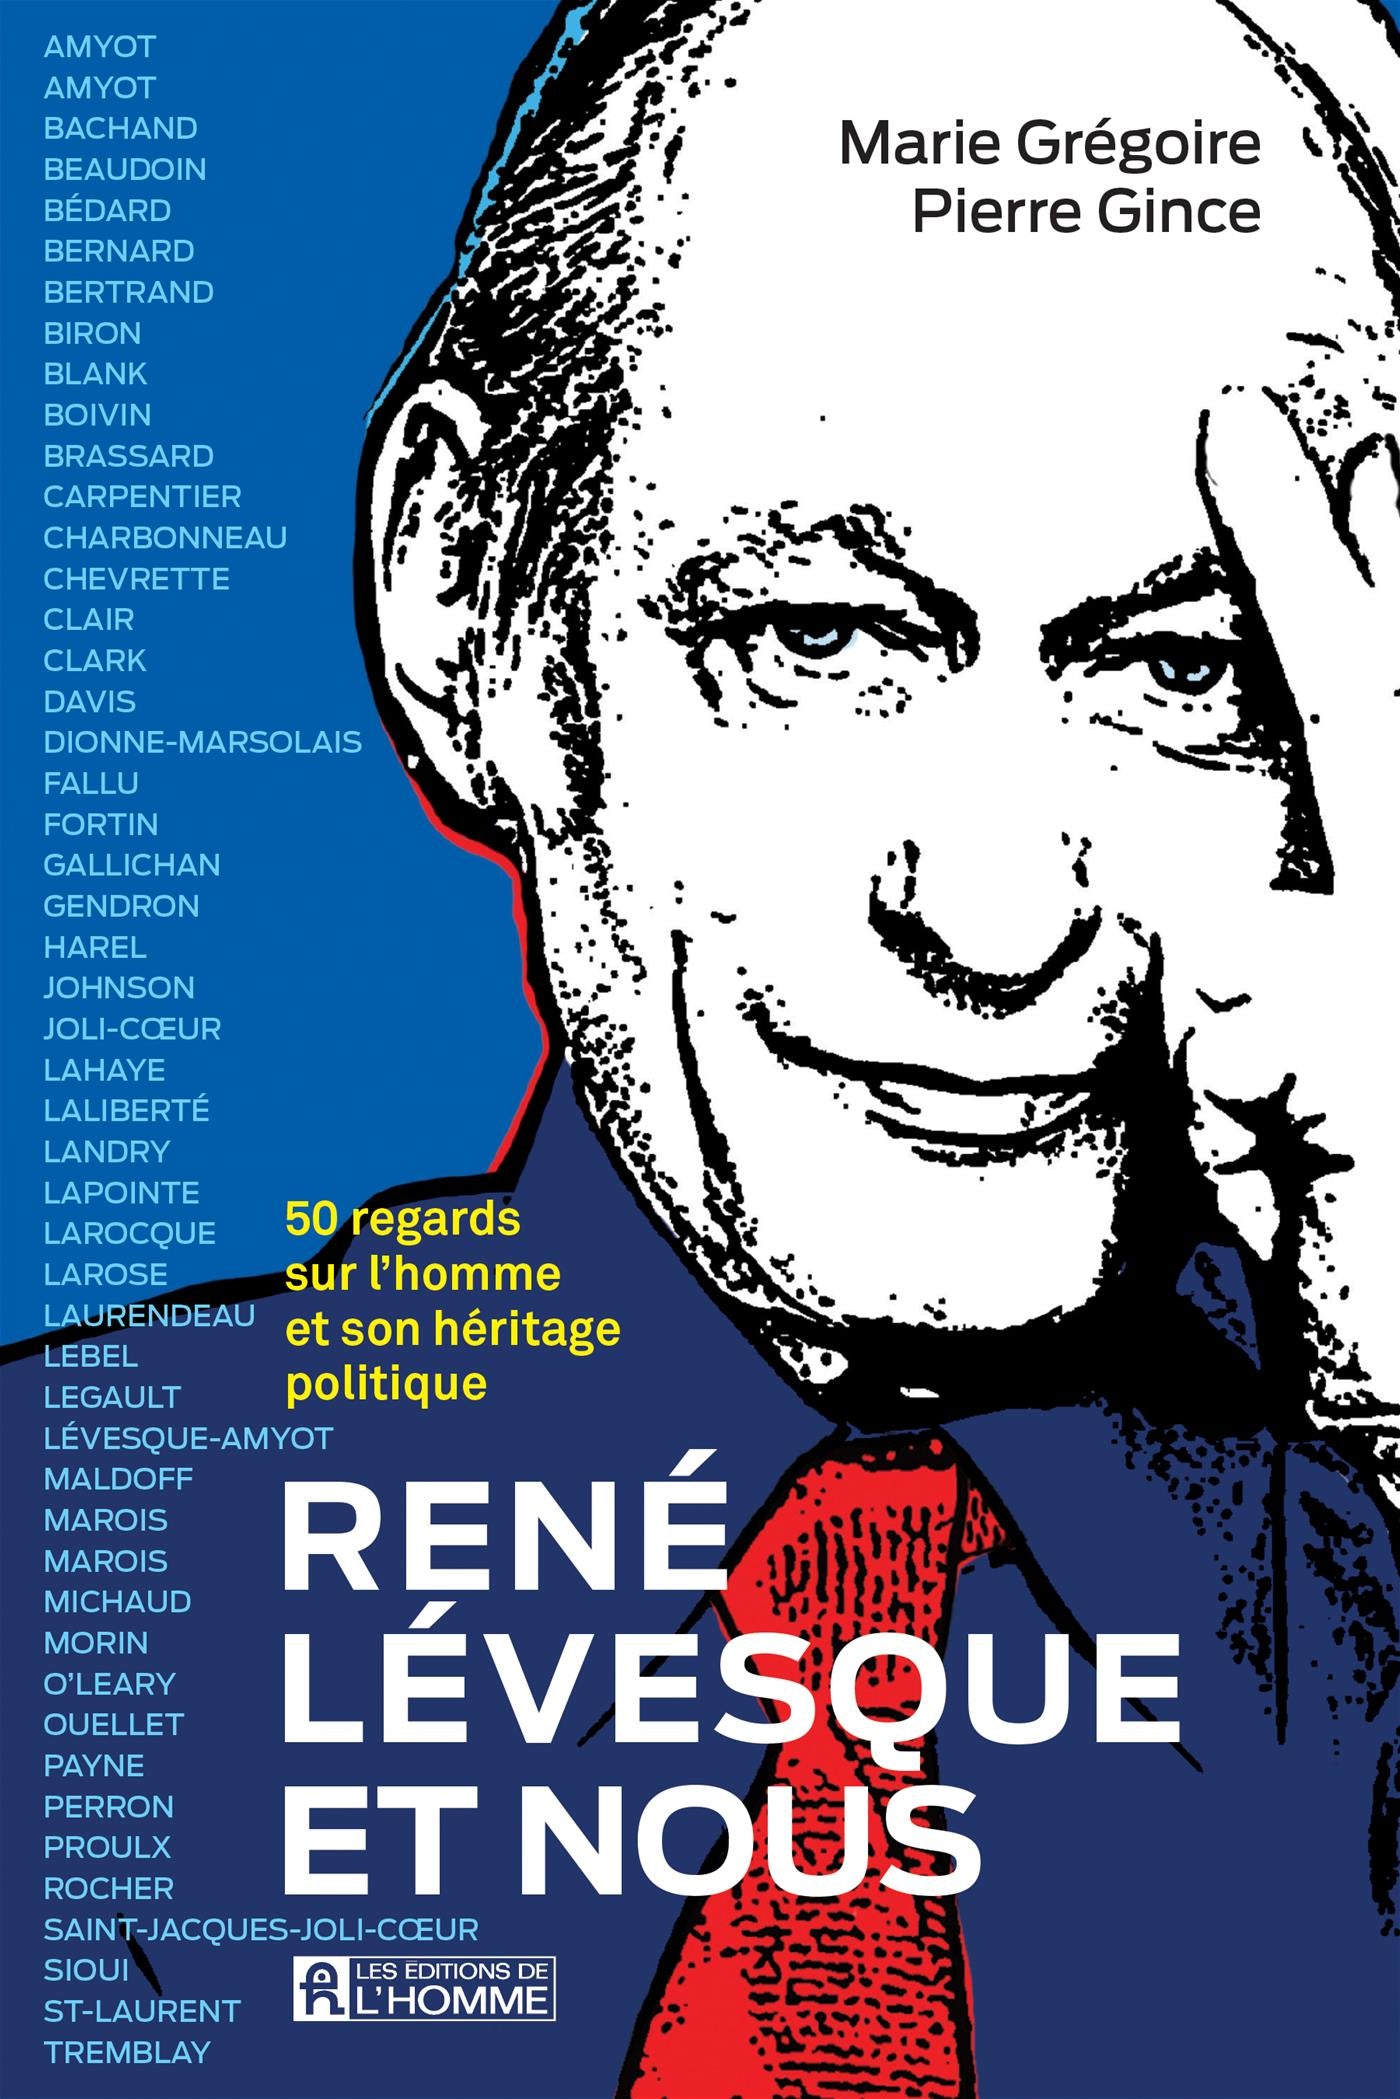 Livre ISBN 2761955234 René Lévesque et nous: 50 regards sur l'homme Ee son héritage politique (Marie Grégoire)